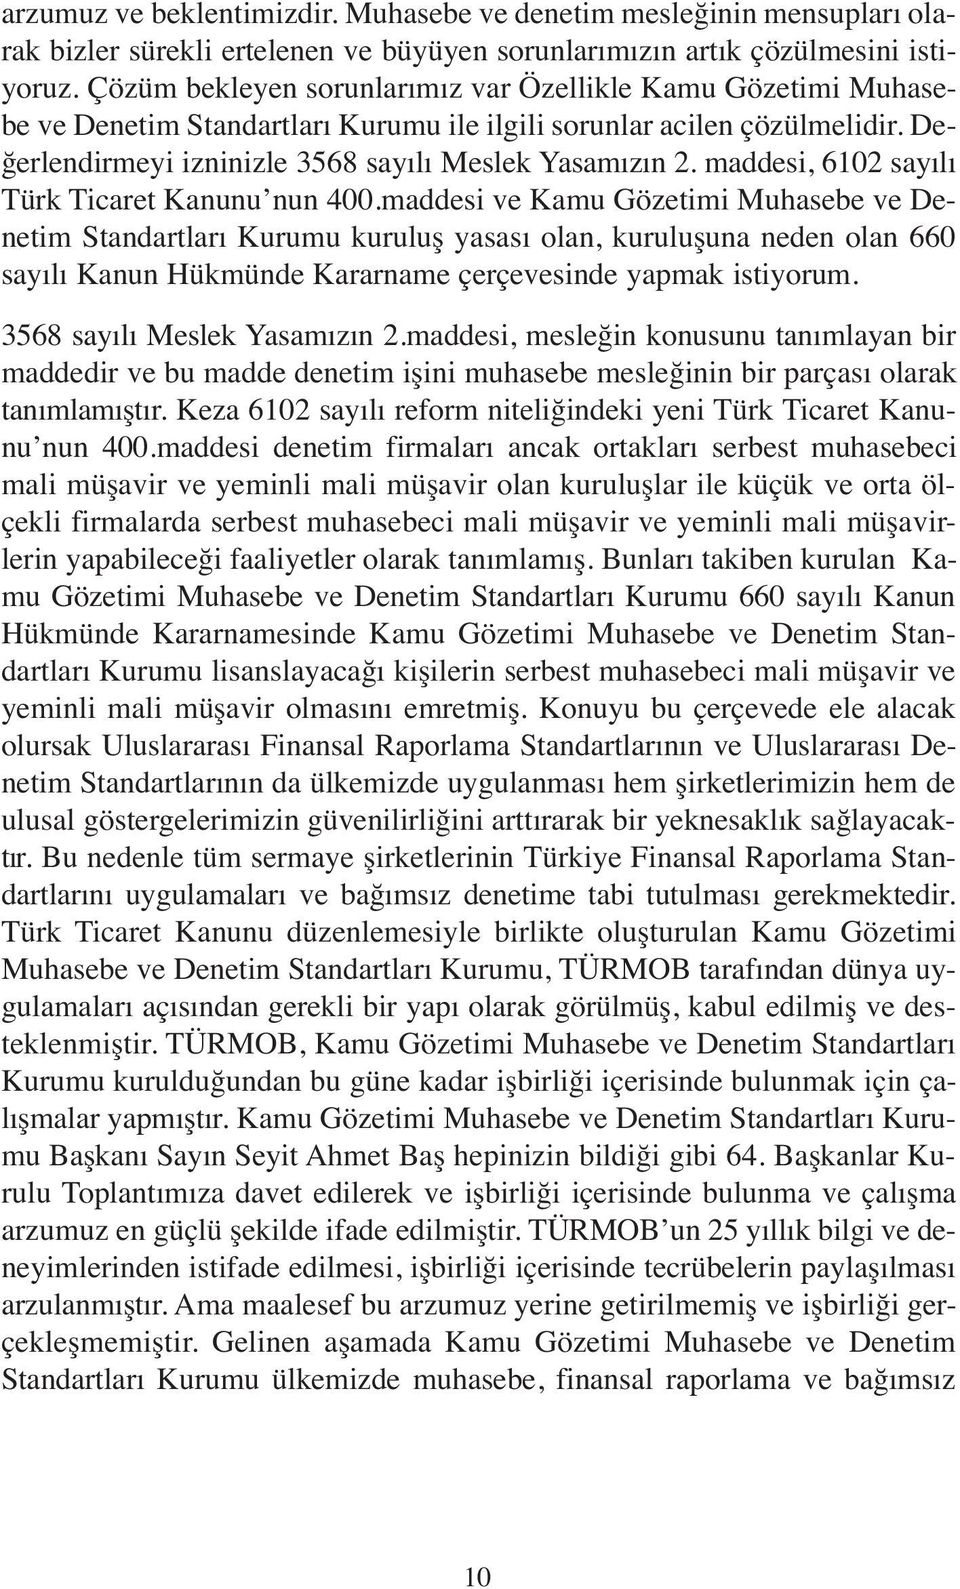 maddesi, 6102 sayılı Türk Ticaret Kanunu nun 400.